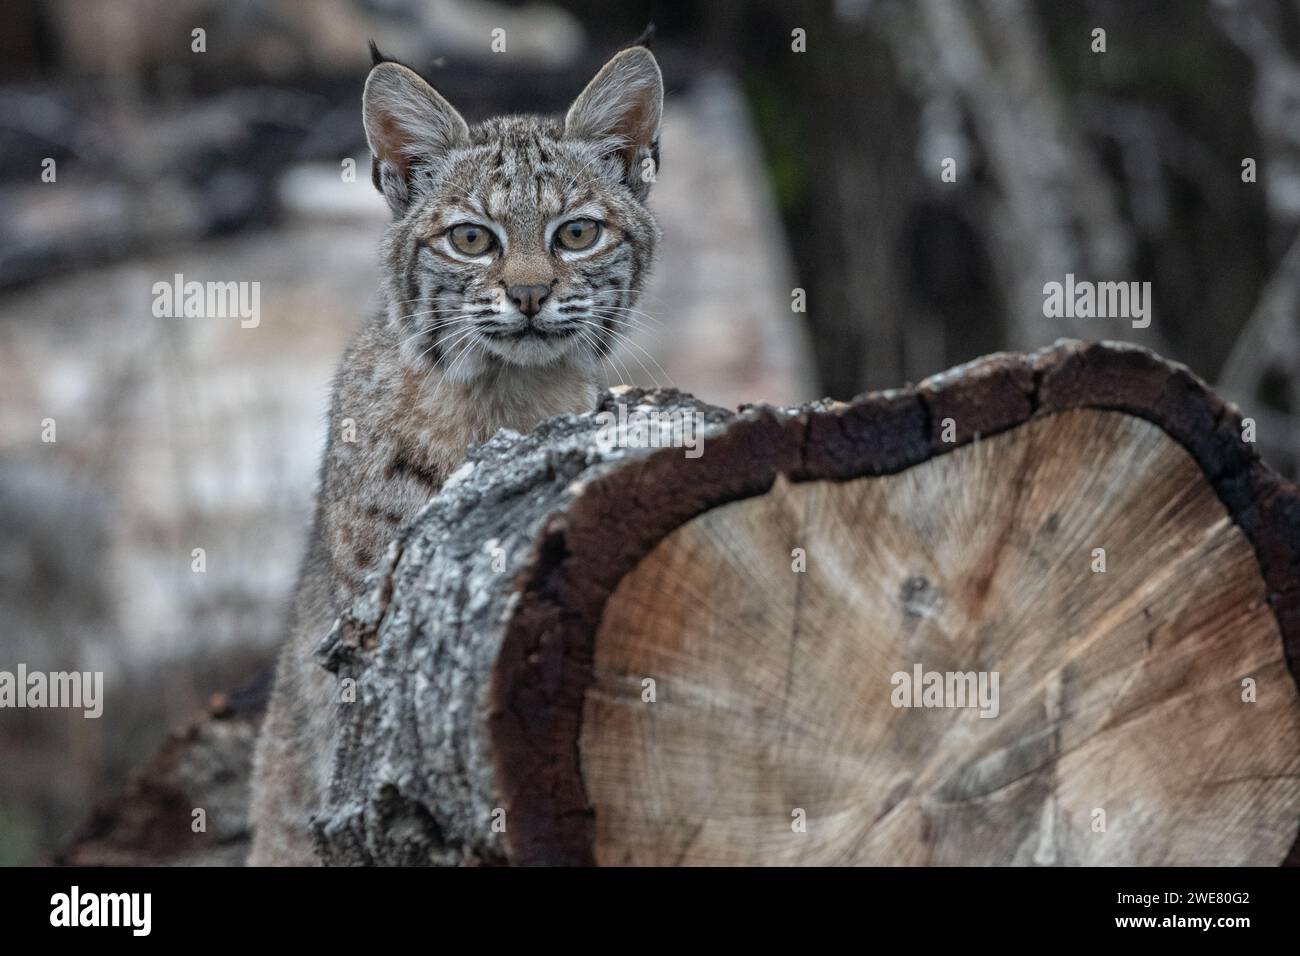 Un chaton lynx rufus (lynx rufus) de la région de la baie de San Francisco en Californie, aux États-Unis. Banque D'Images